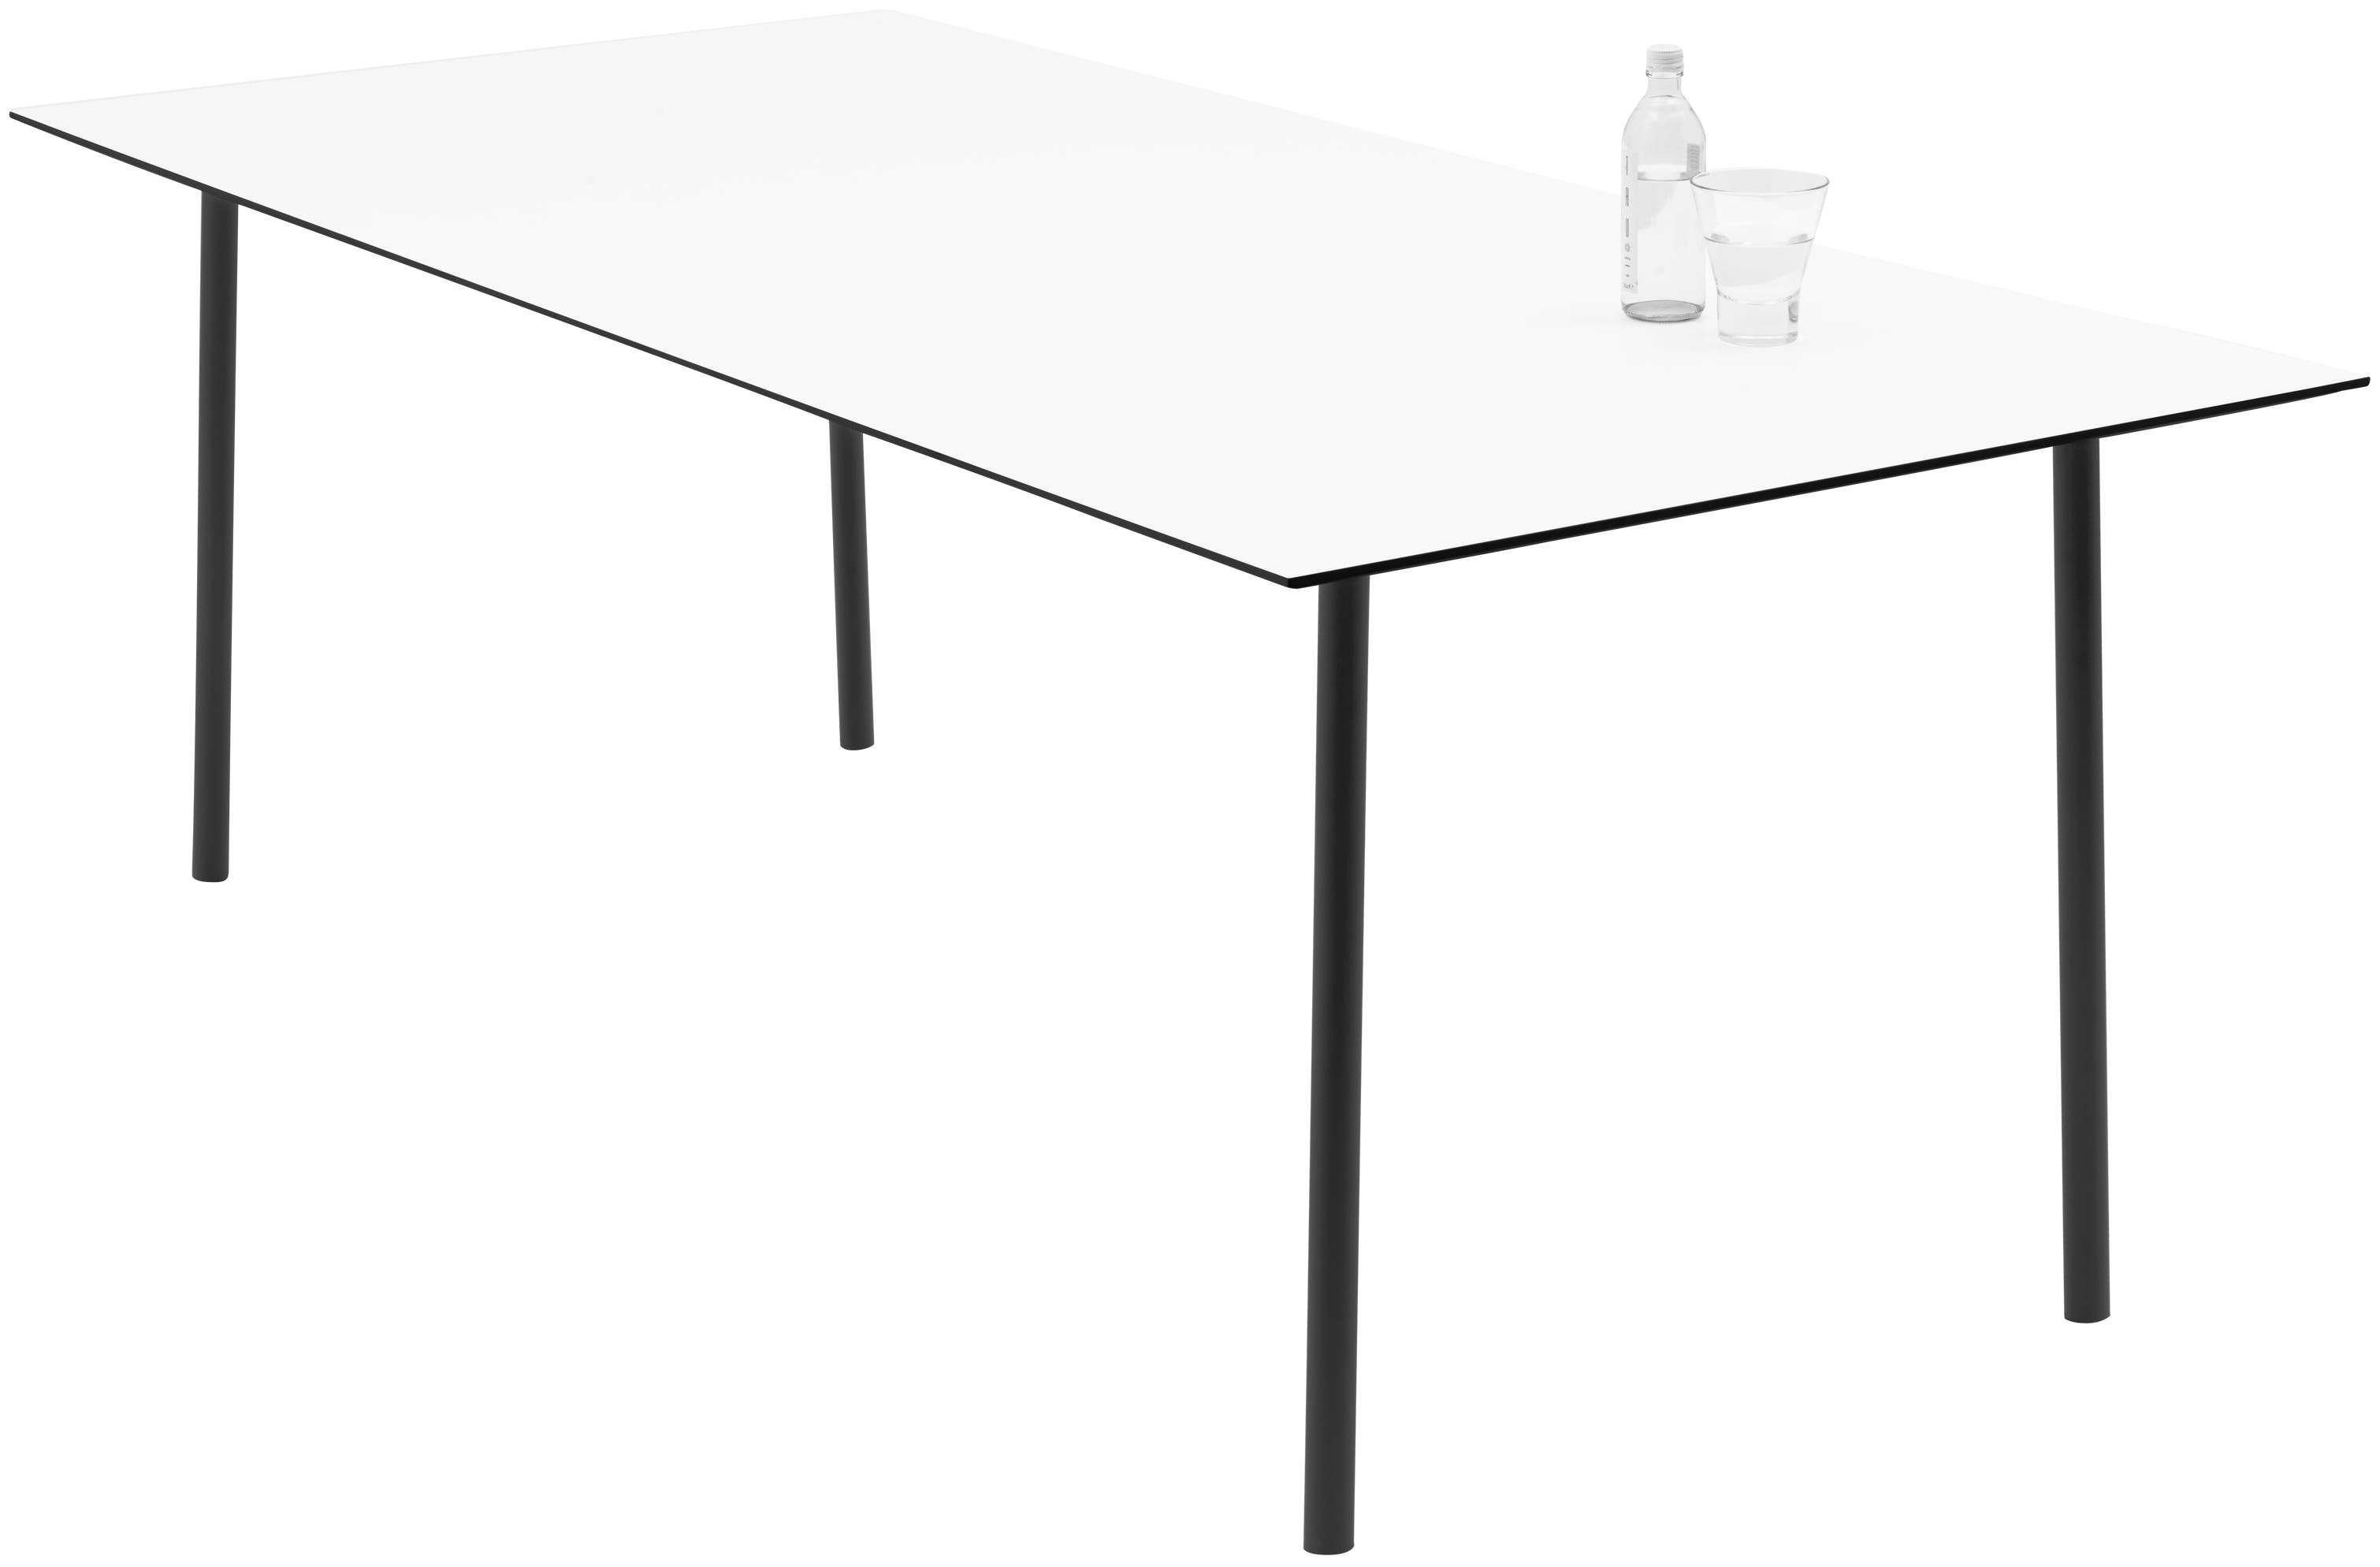 Elba matsalsbord (kan användas inomhus och utomhus)